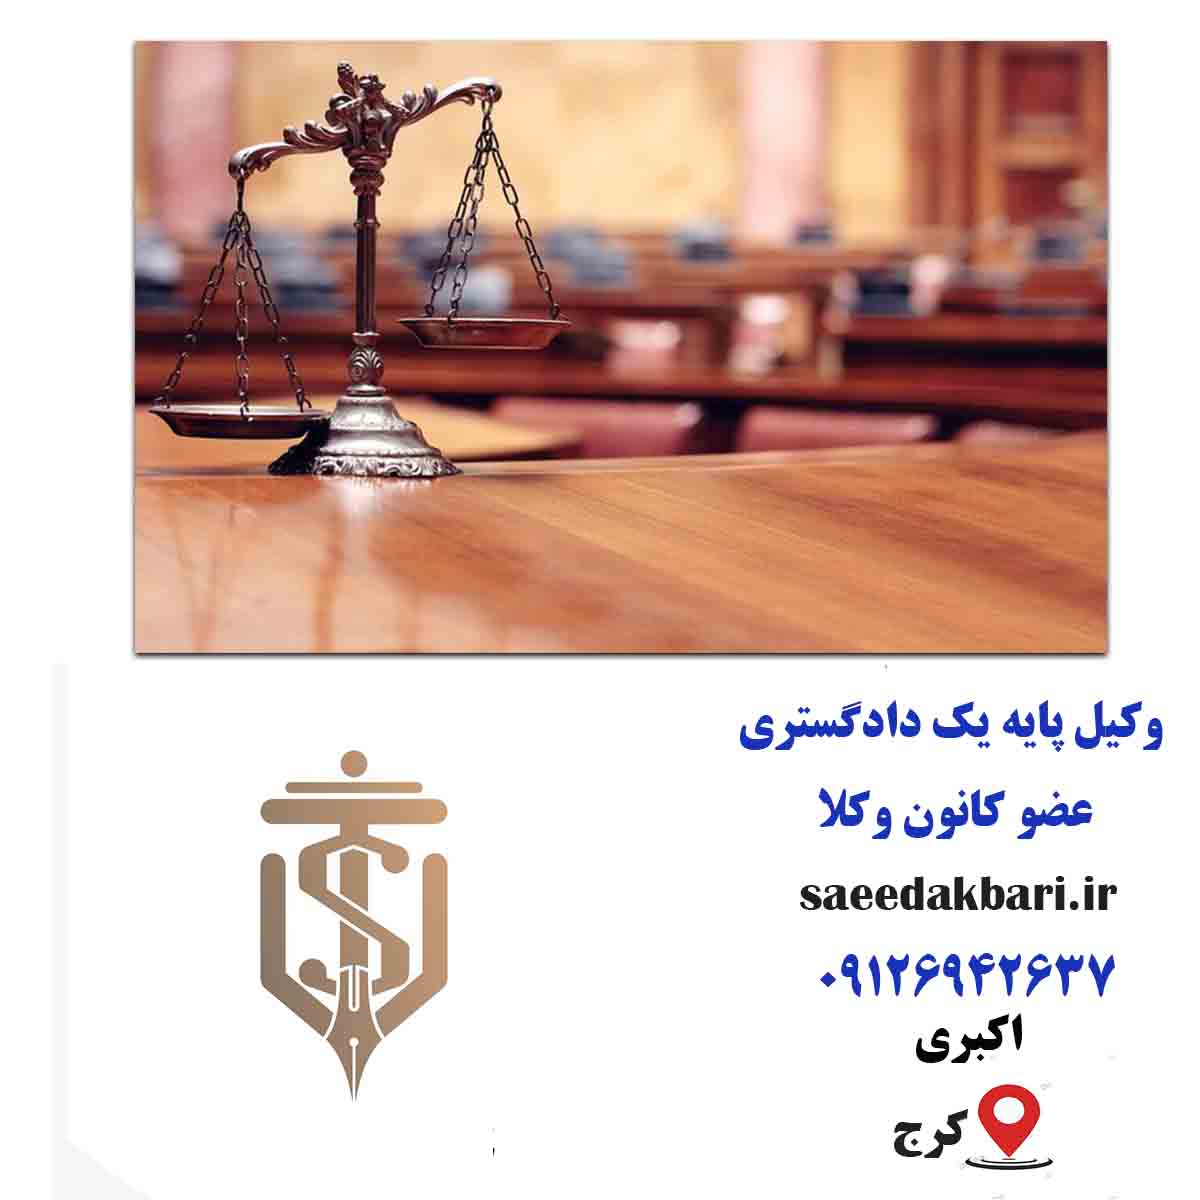 وکیل خوب در کرج | مشاوره آنلاین | اکبری